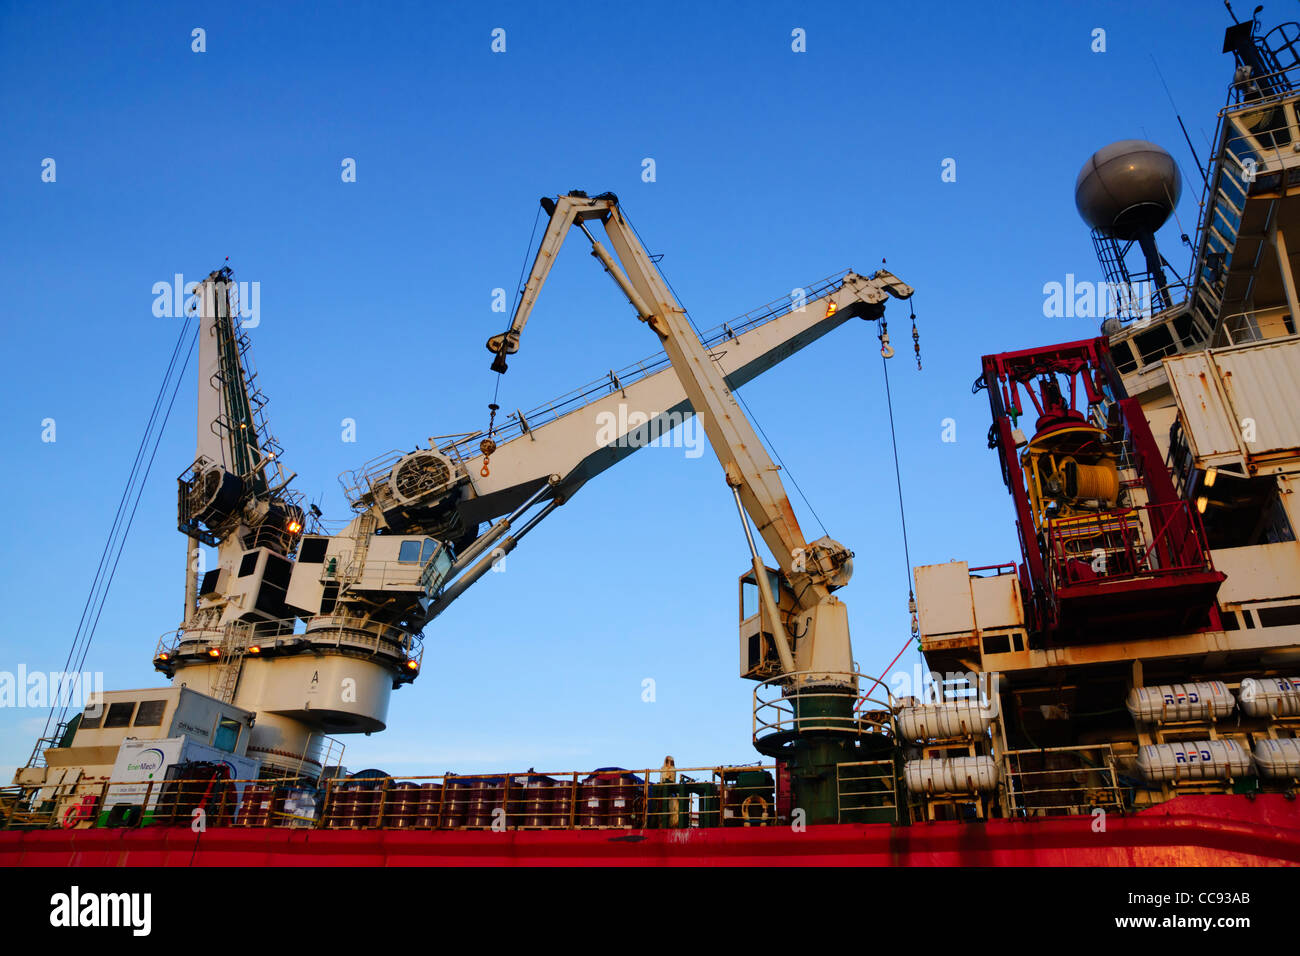 Der schottischen Nordsee Öl Rig Unterstützung Schiff, Wellservicer of Aberdeen, im Hafen von Leith, Edinburgh. Stockfoto